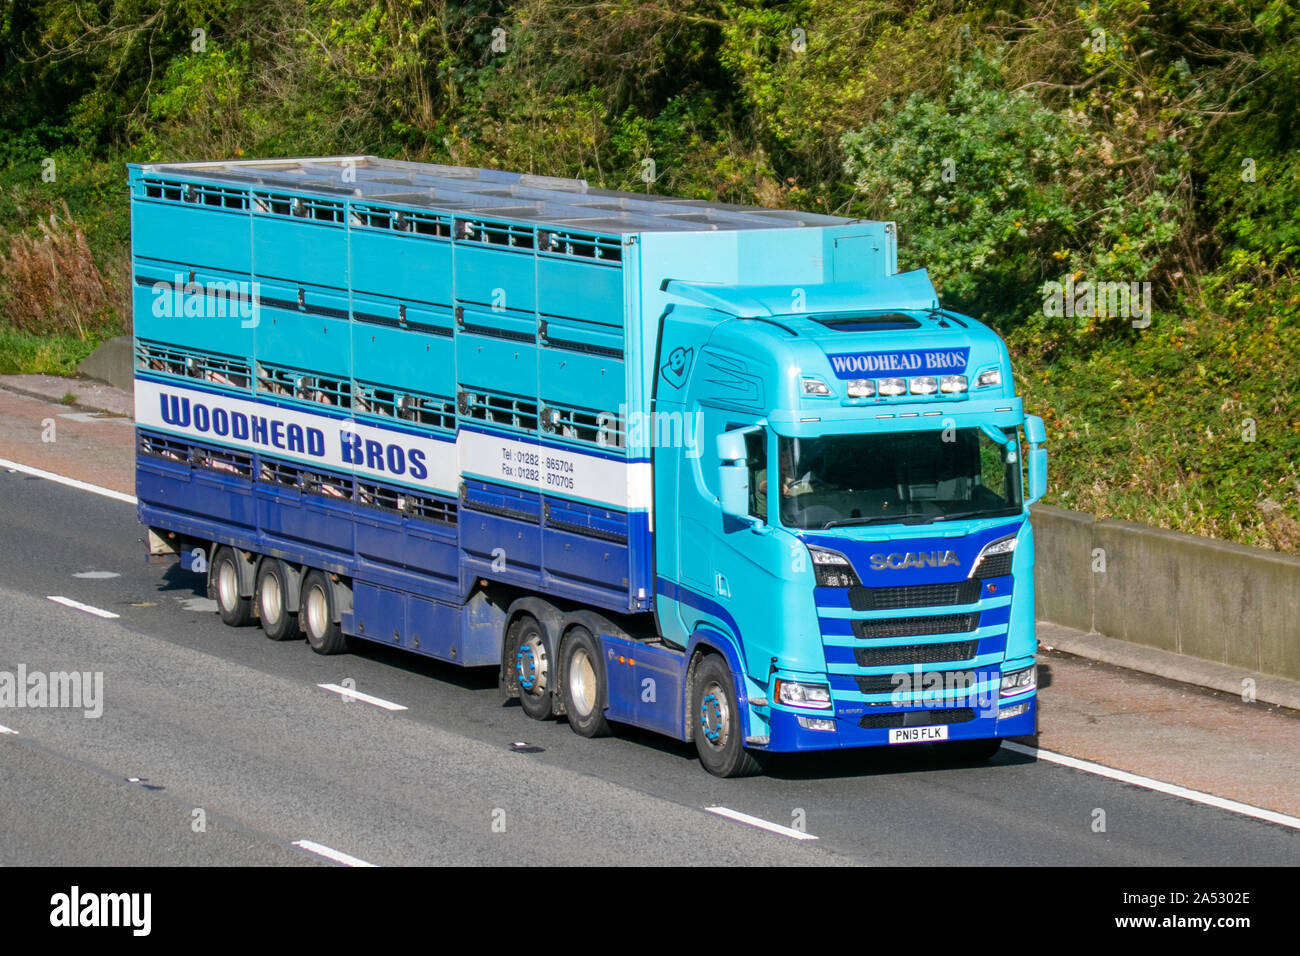 Woodhead Bros Meat Co. Industrie britannique de la viande ; camions de livraison d'animaux de transport de vrac lourd d'autoroute, transport de bétail, camion, transport, camion, cargaison spéciale, véhicule Scania, livraison, industrie du transport sur la M6 à Lancaster, Banque D'Images